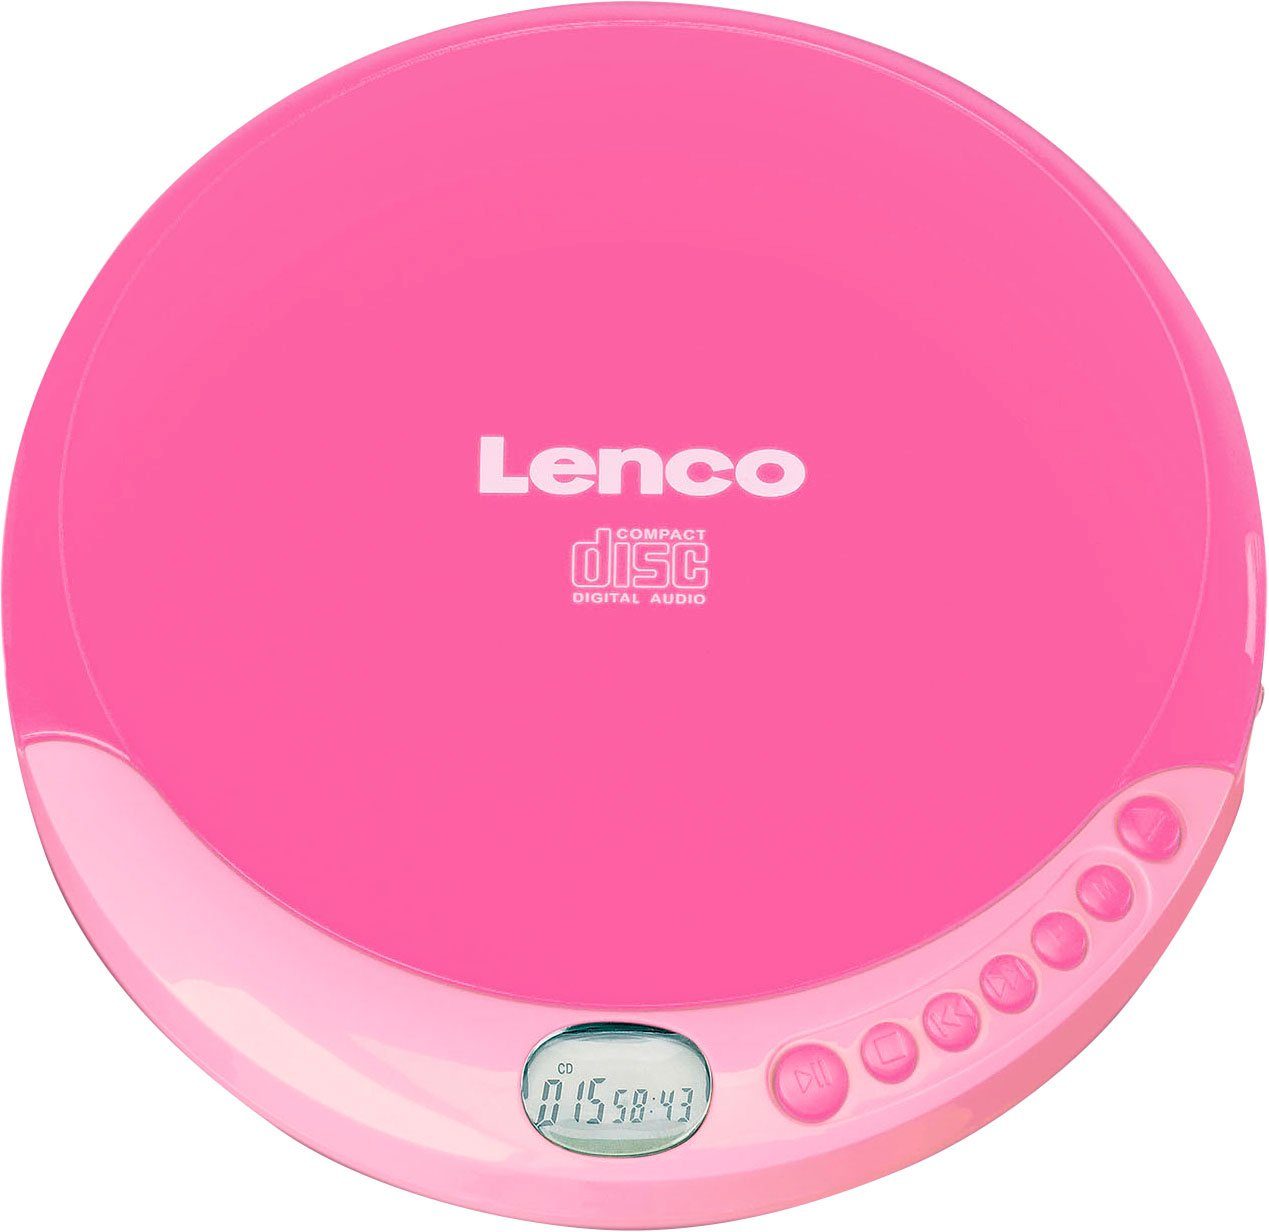 Lenco CD-011 rosa CD-Player